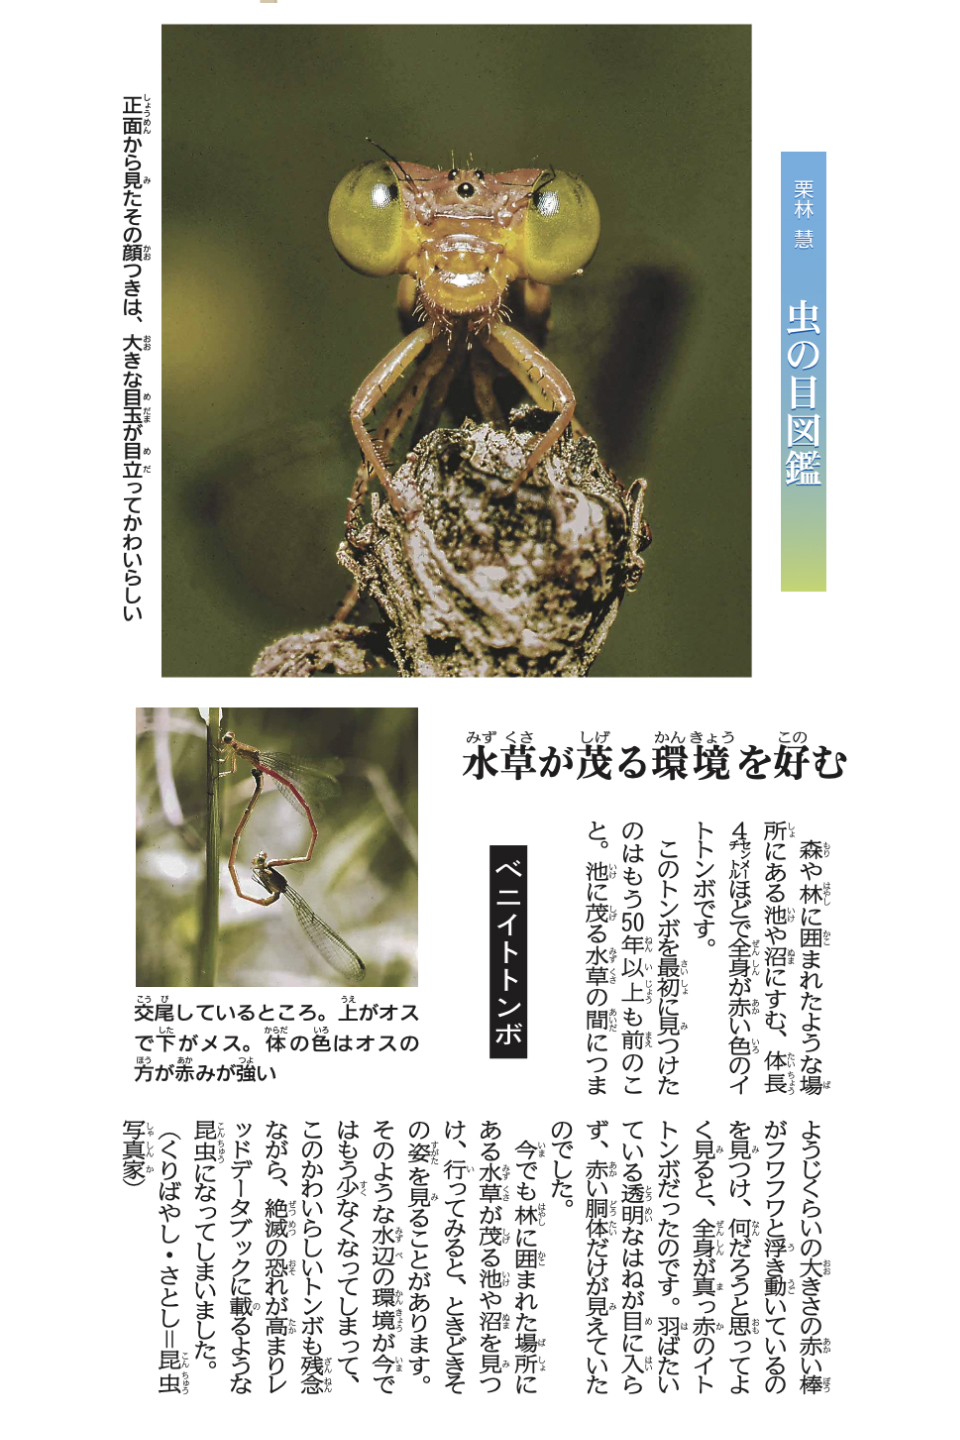 昆虫写真家・栗林慧さんの写真コラム「虫の目図鑑」